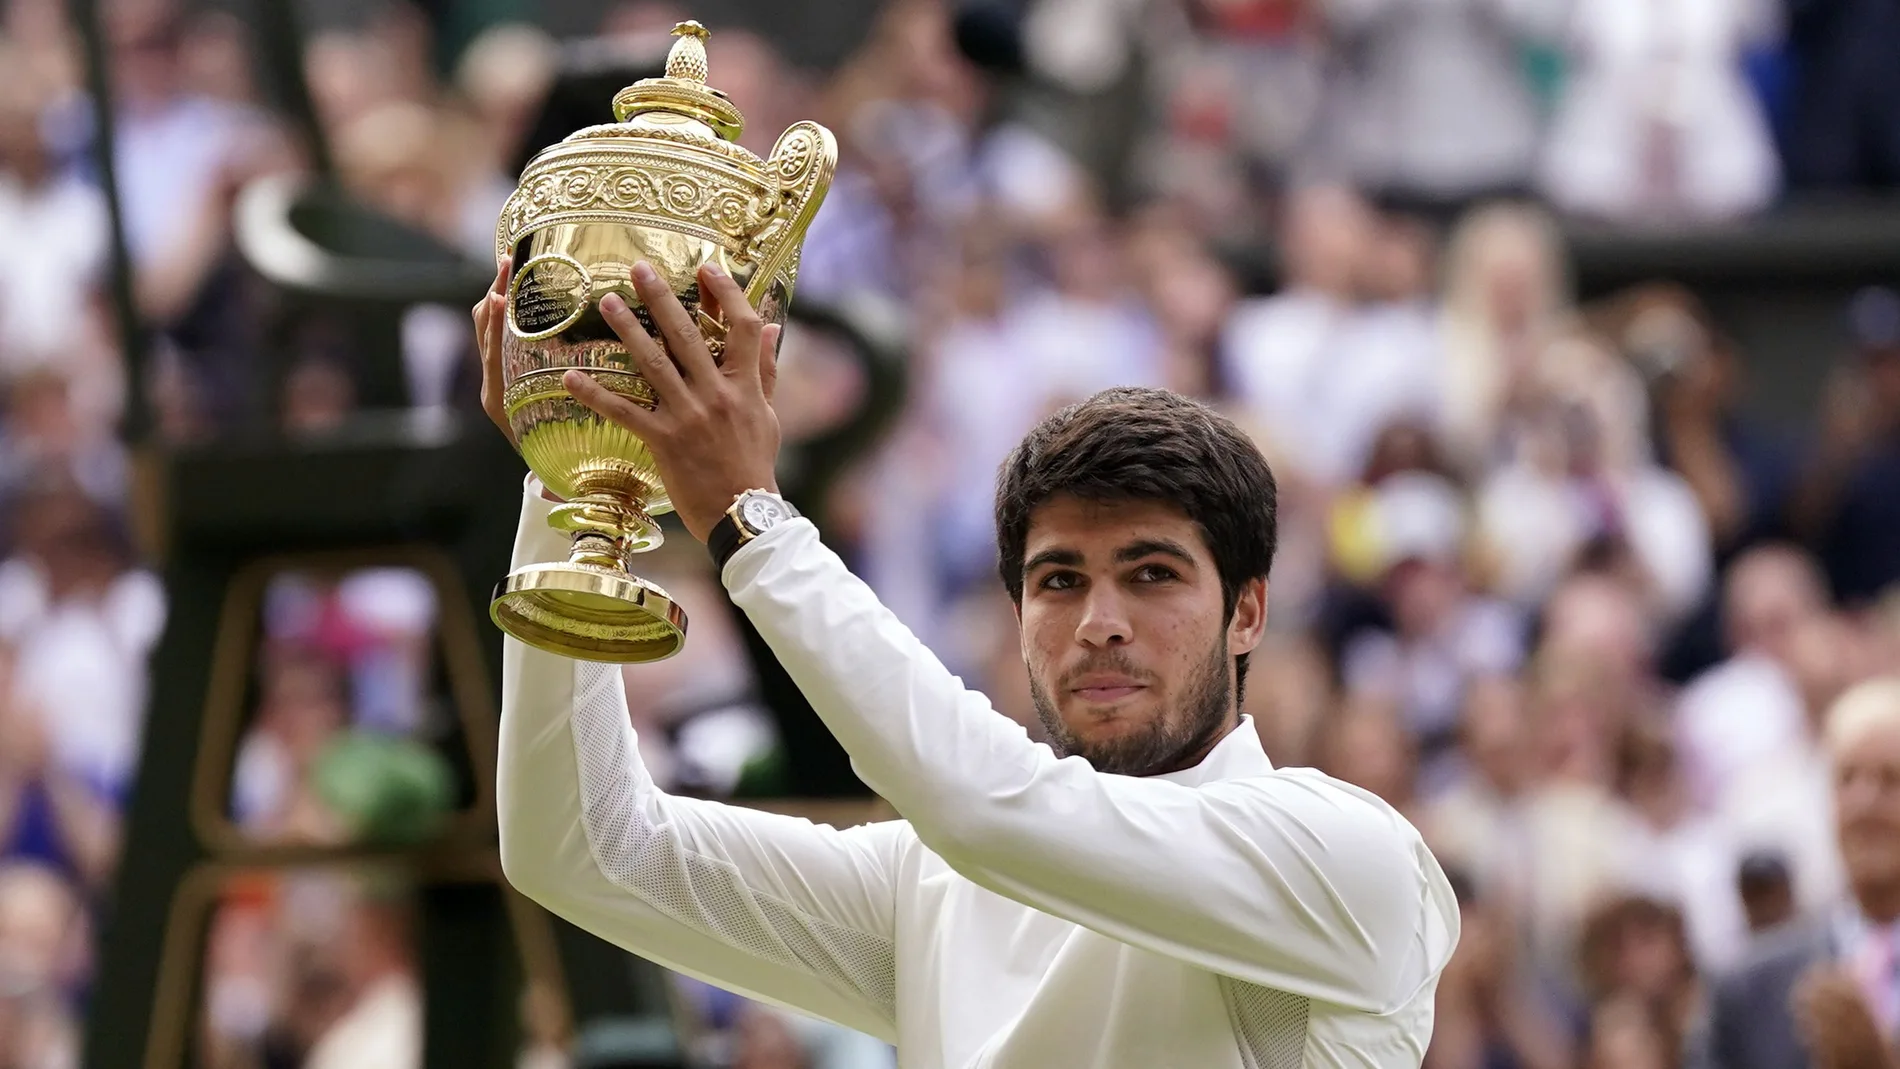 Carlos Alcaraz levanta el trofeo de su primer torneo de Wimbledon tras ganar a Djokovic